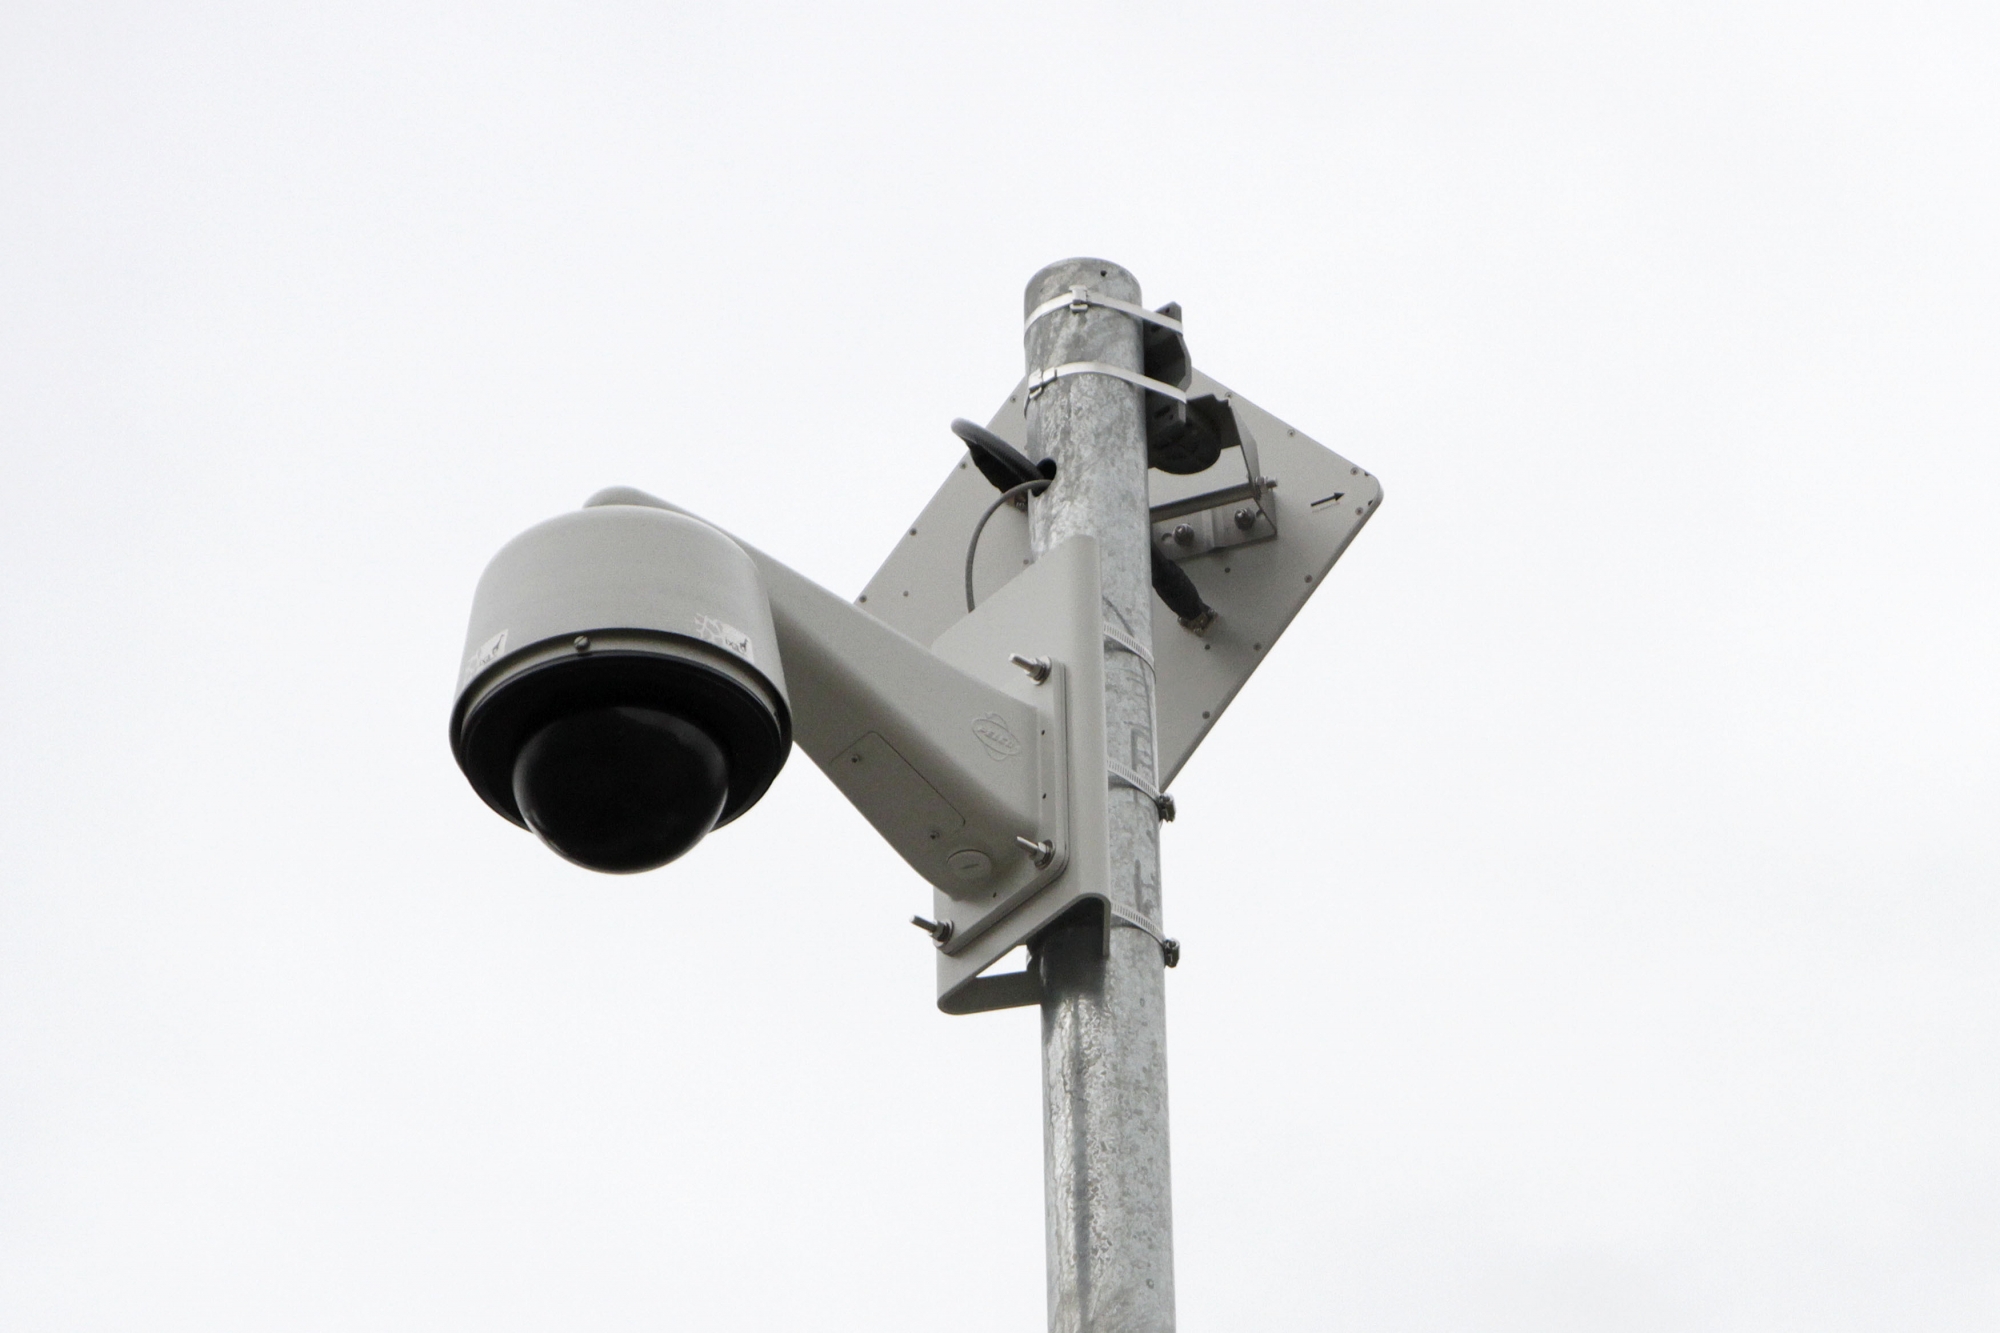 Cinq caméras de surveillance sont installées à Nyon. Leur nombre ne devrait pas augmenter.